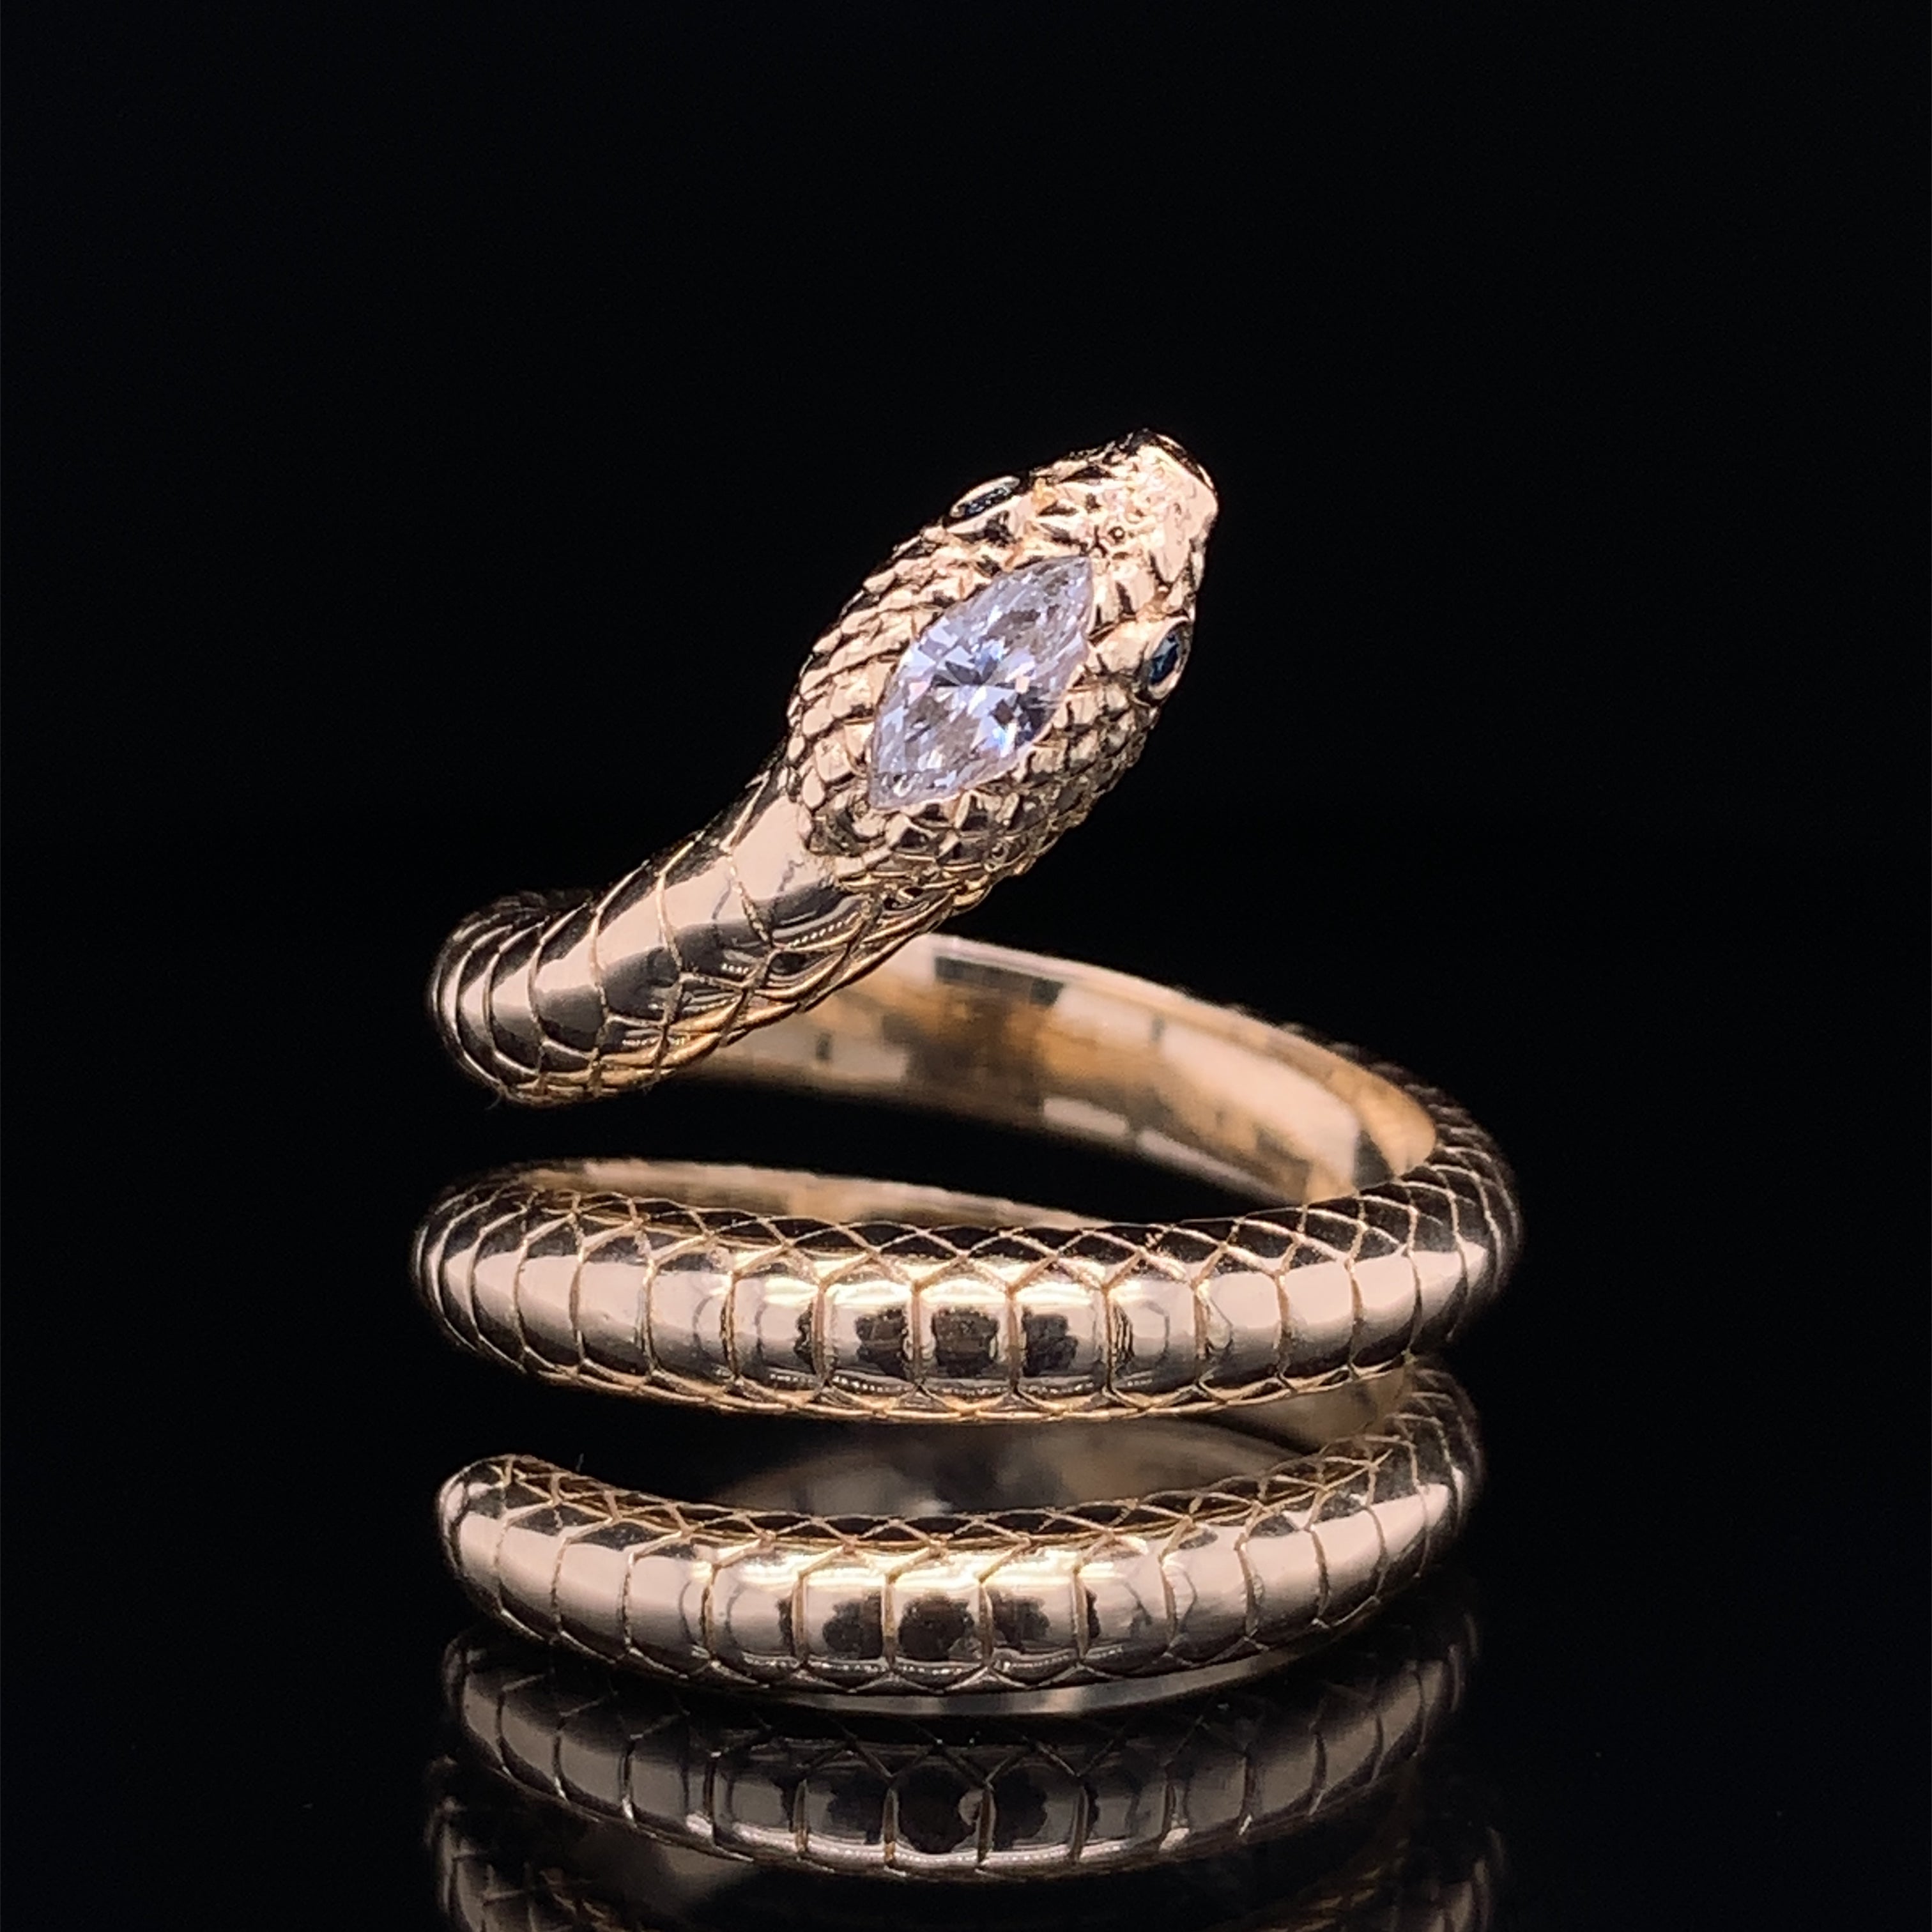 Men's Gold Snake Ring - Spiral Snake Ring for Men | Twistedpendant